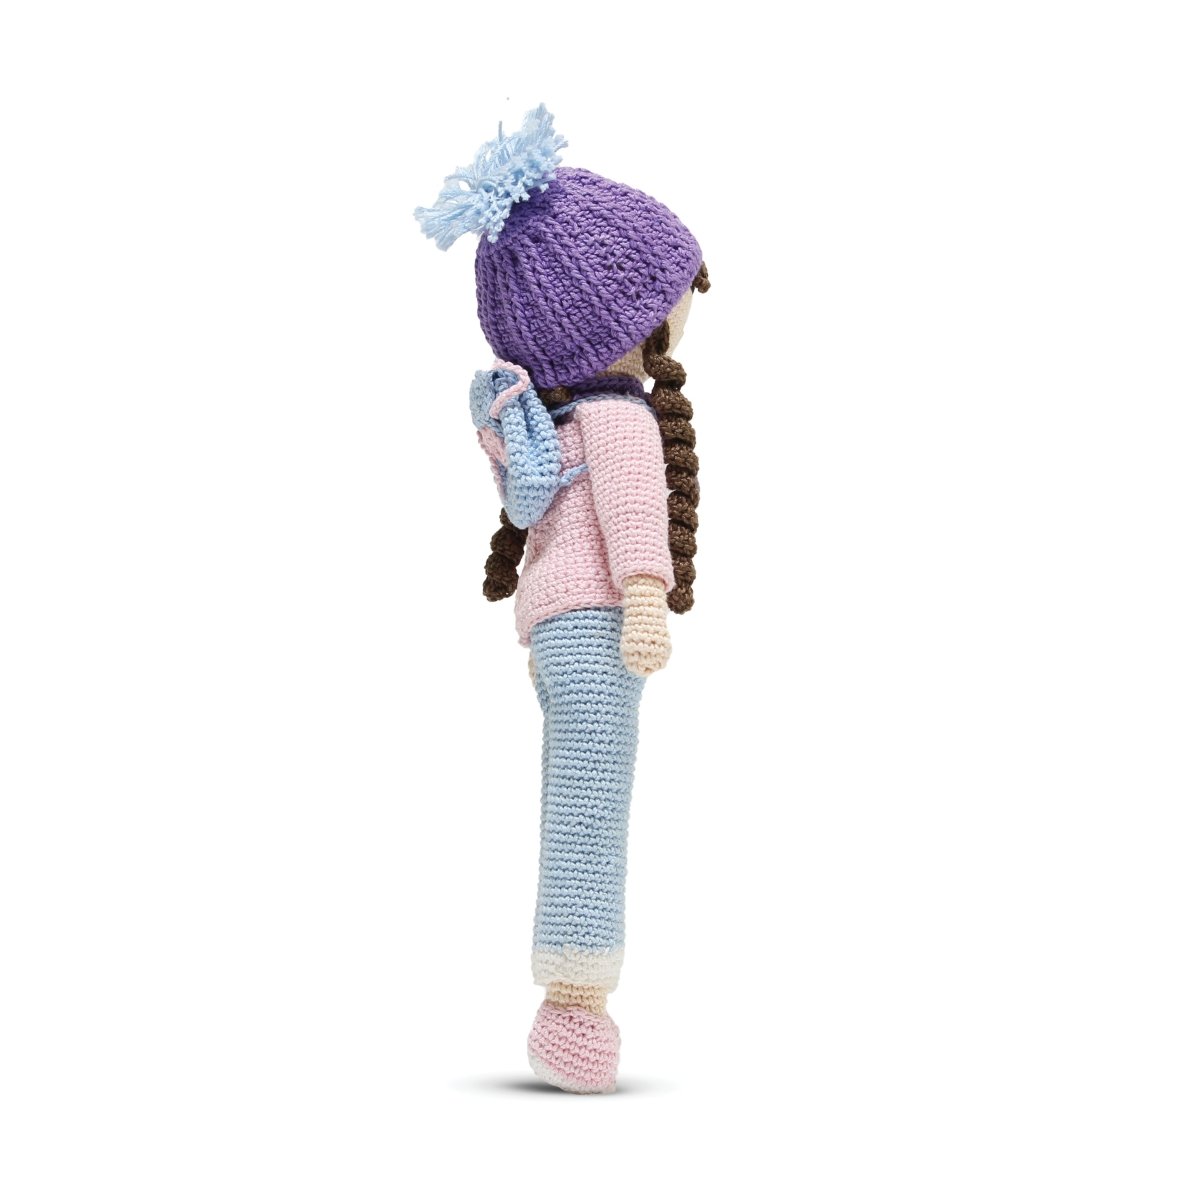 Nuluv-Happy Threads Amigurumi Soft Toy- Stylish Doll - SWTE0805